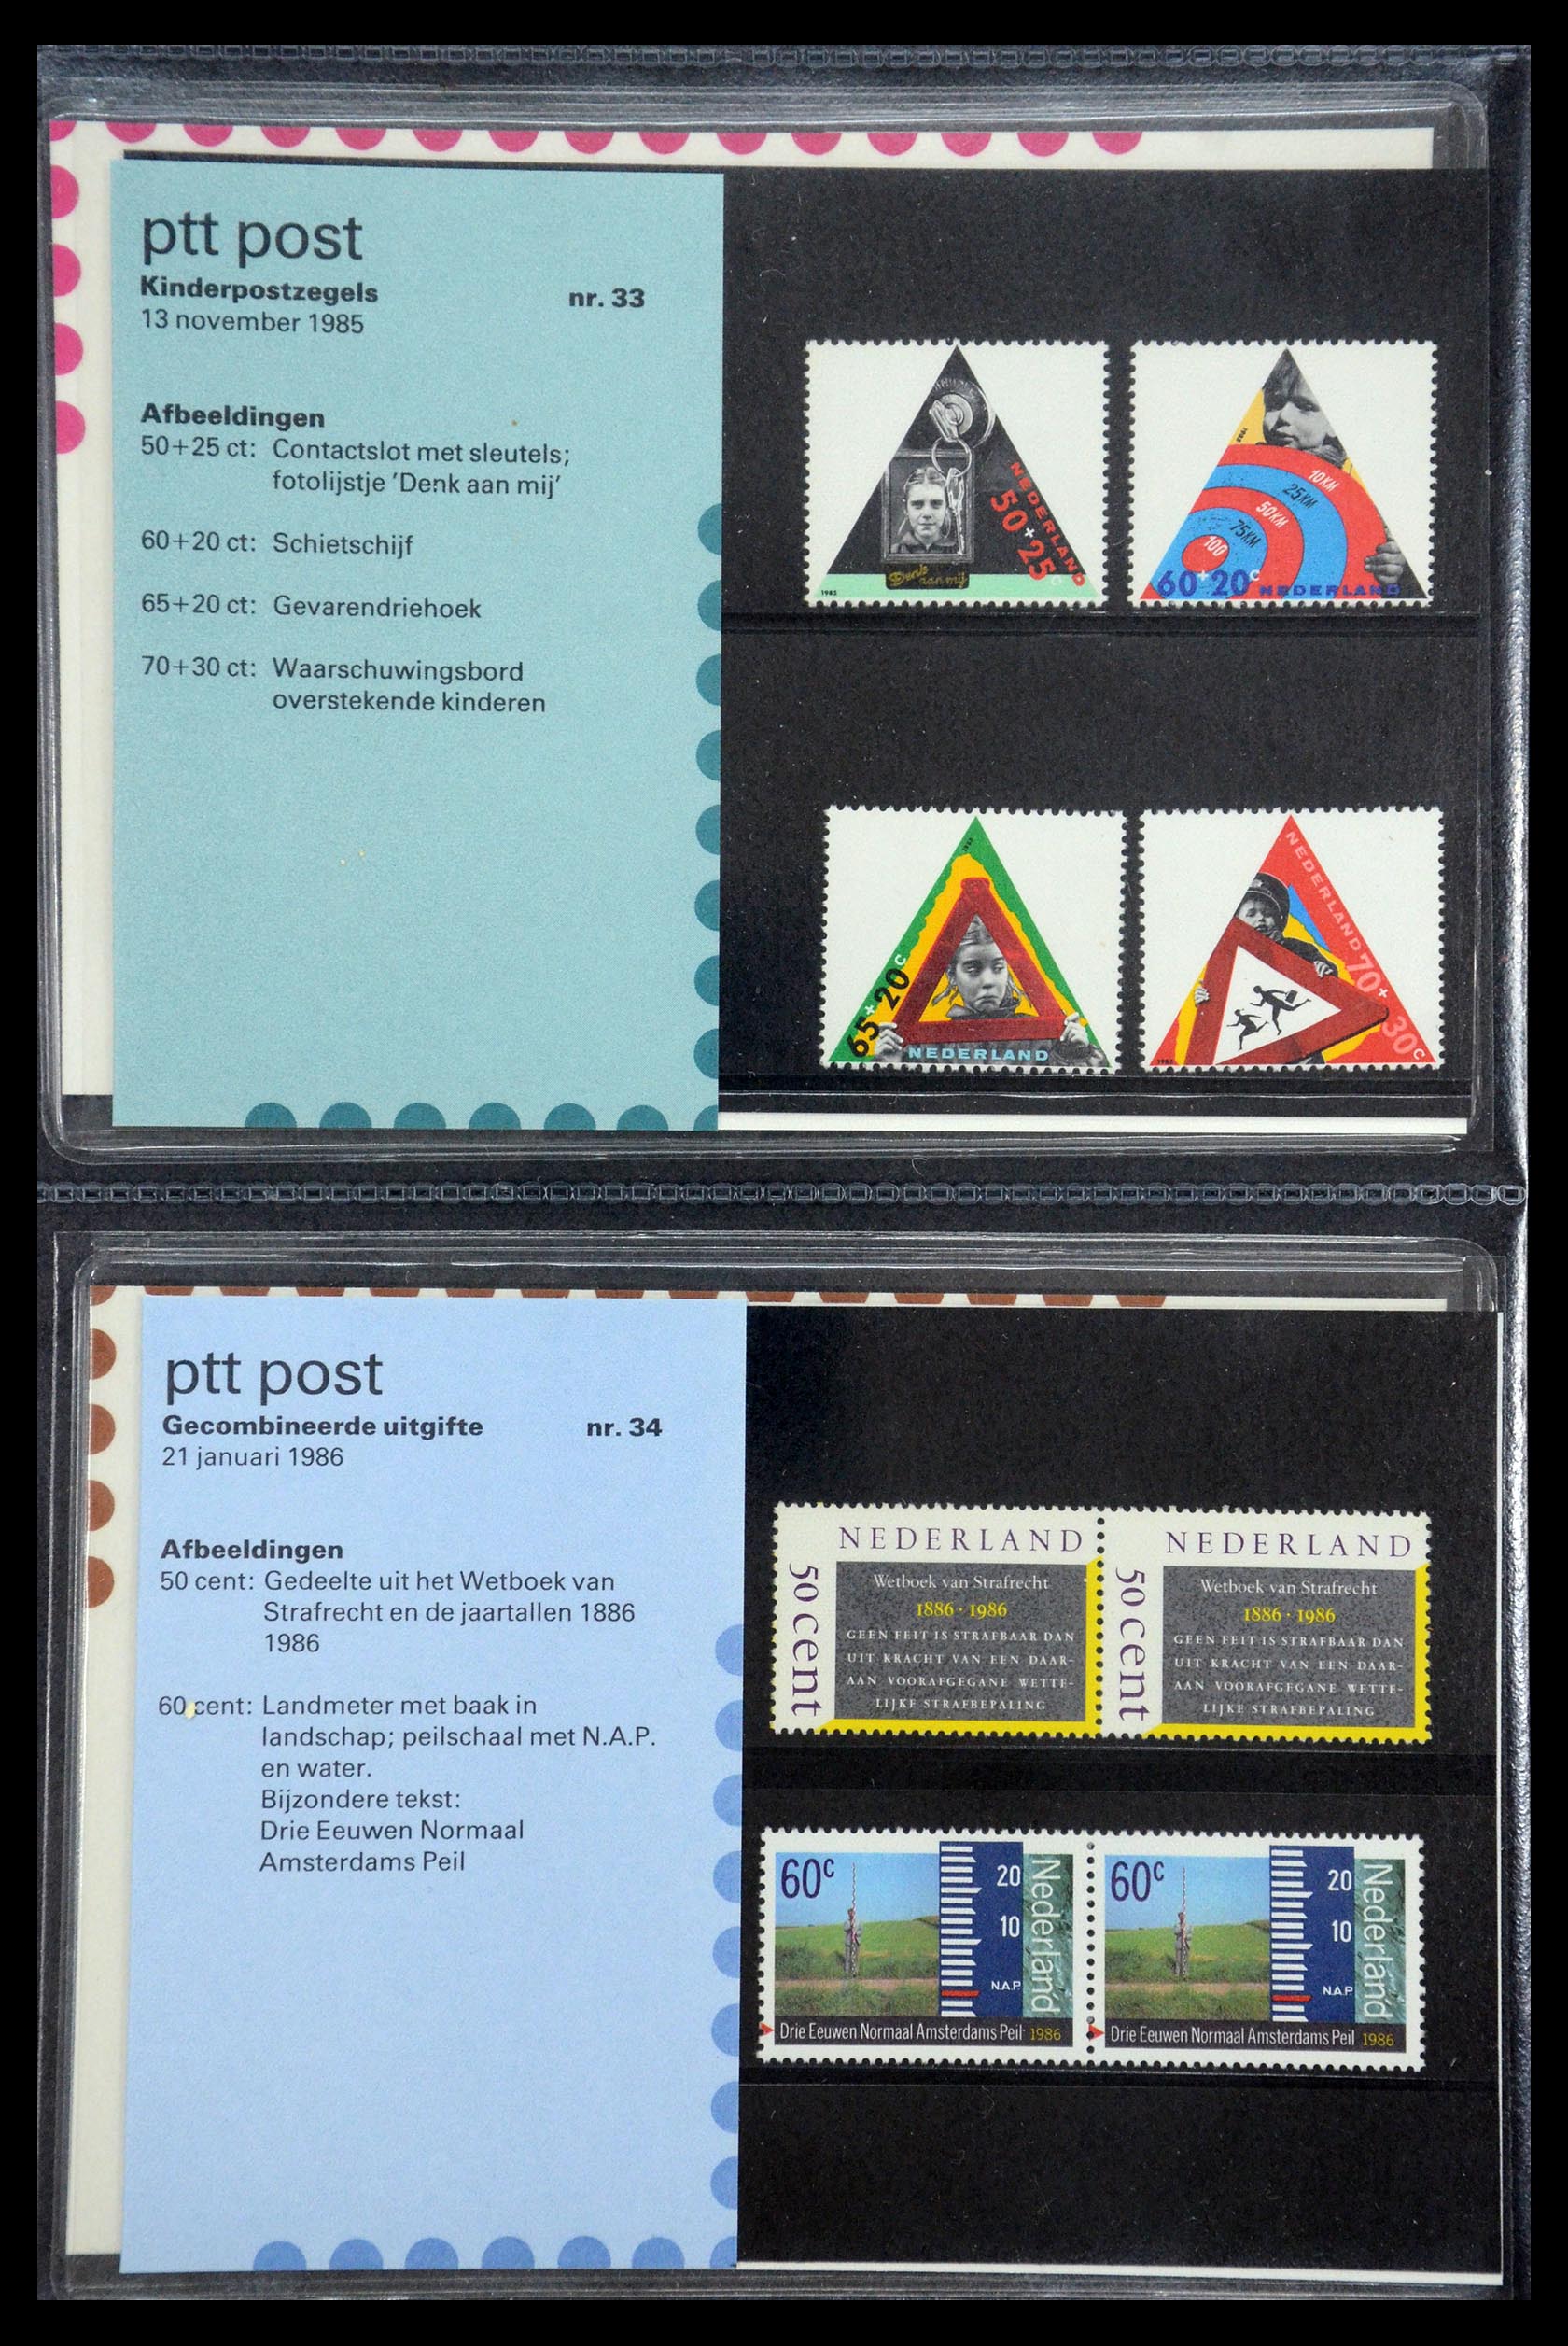 35187 017 - Stamp Collection 35187 Netherlands PTT presentation packs 1982-2019!